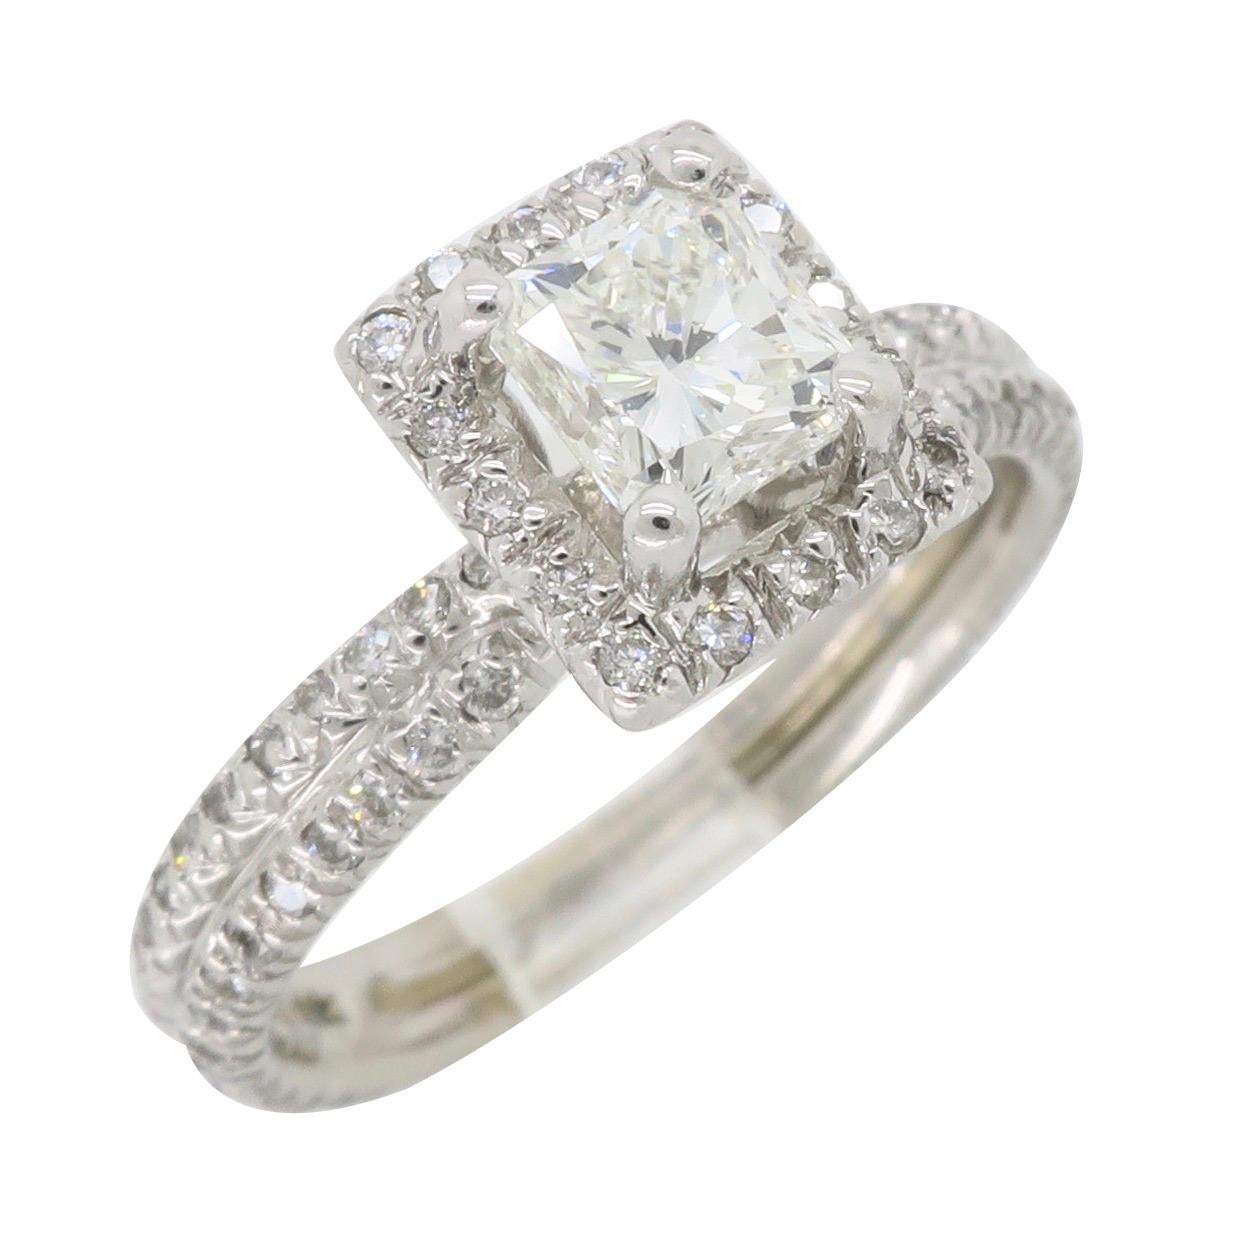 Princess Cut Diamond Halo Engagement Ring in 18 Karat White Gold 4